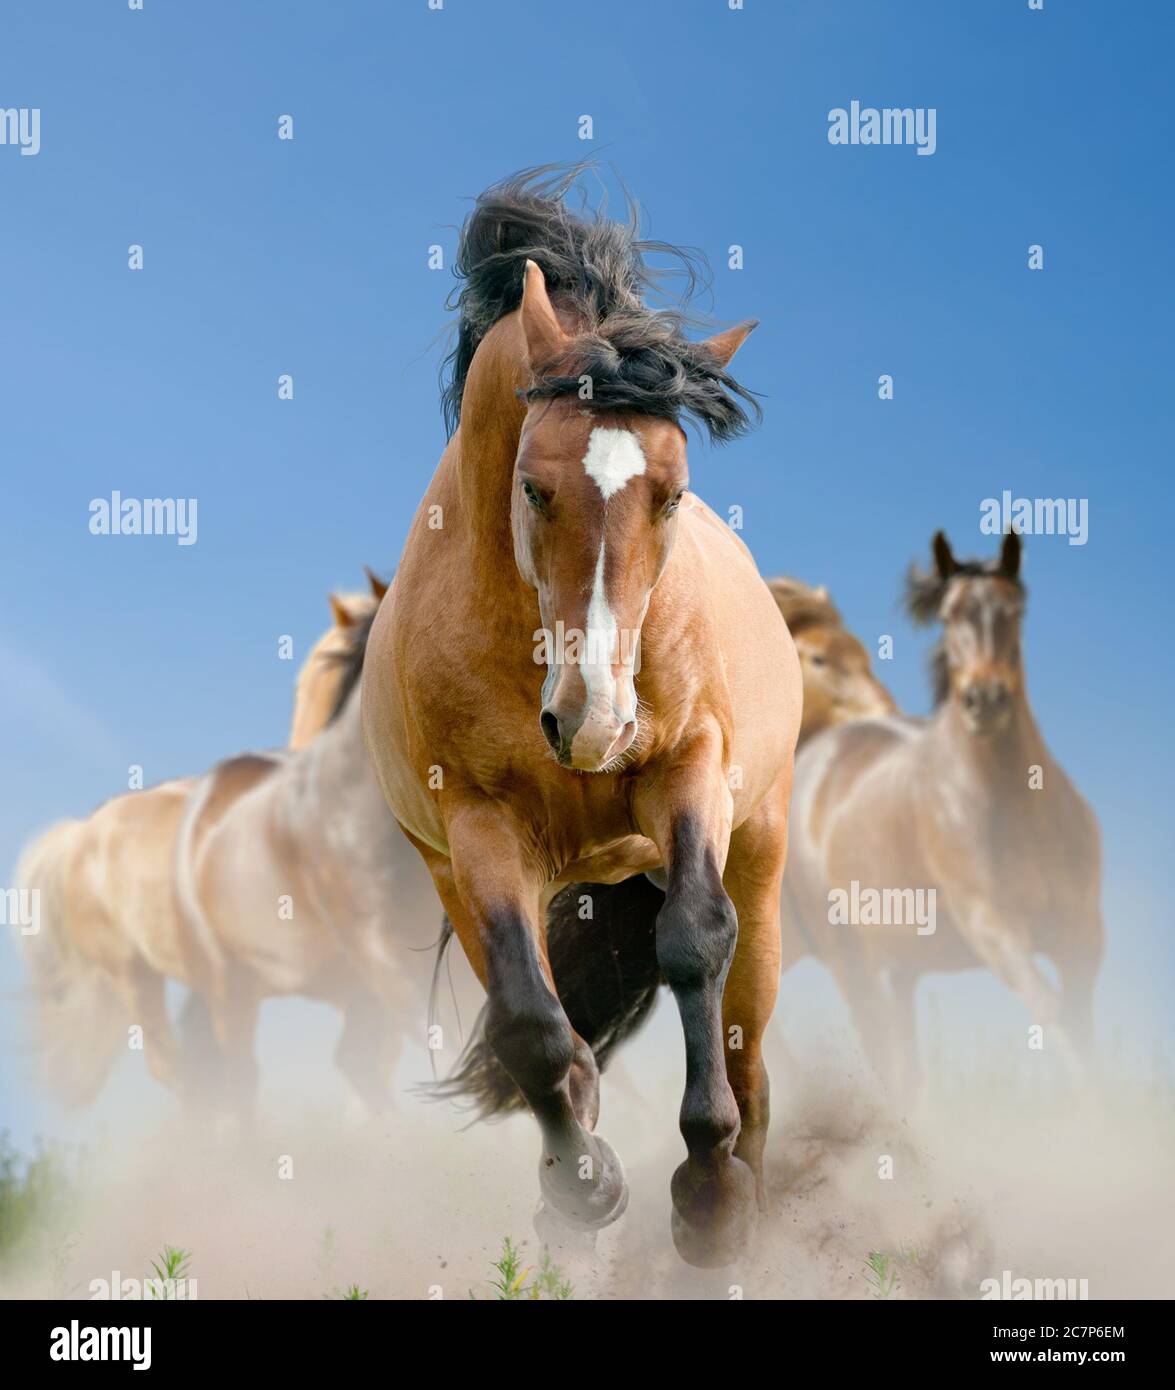 Herd of wild horses in summer running wild Stock Photo